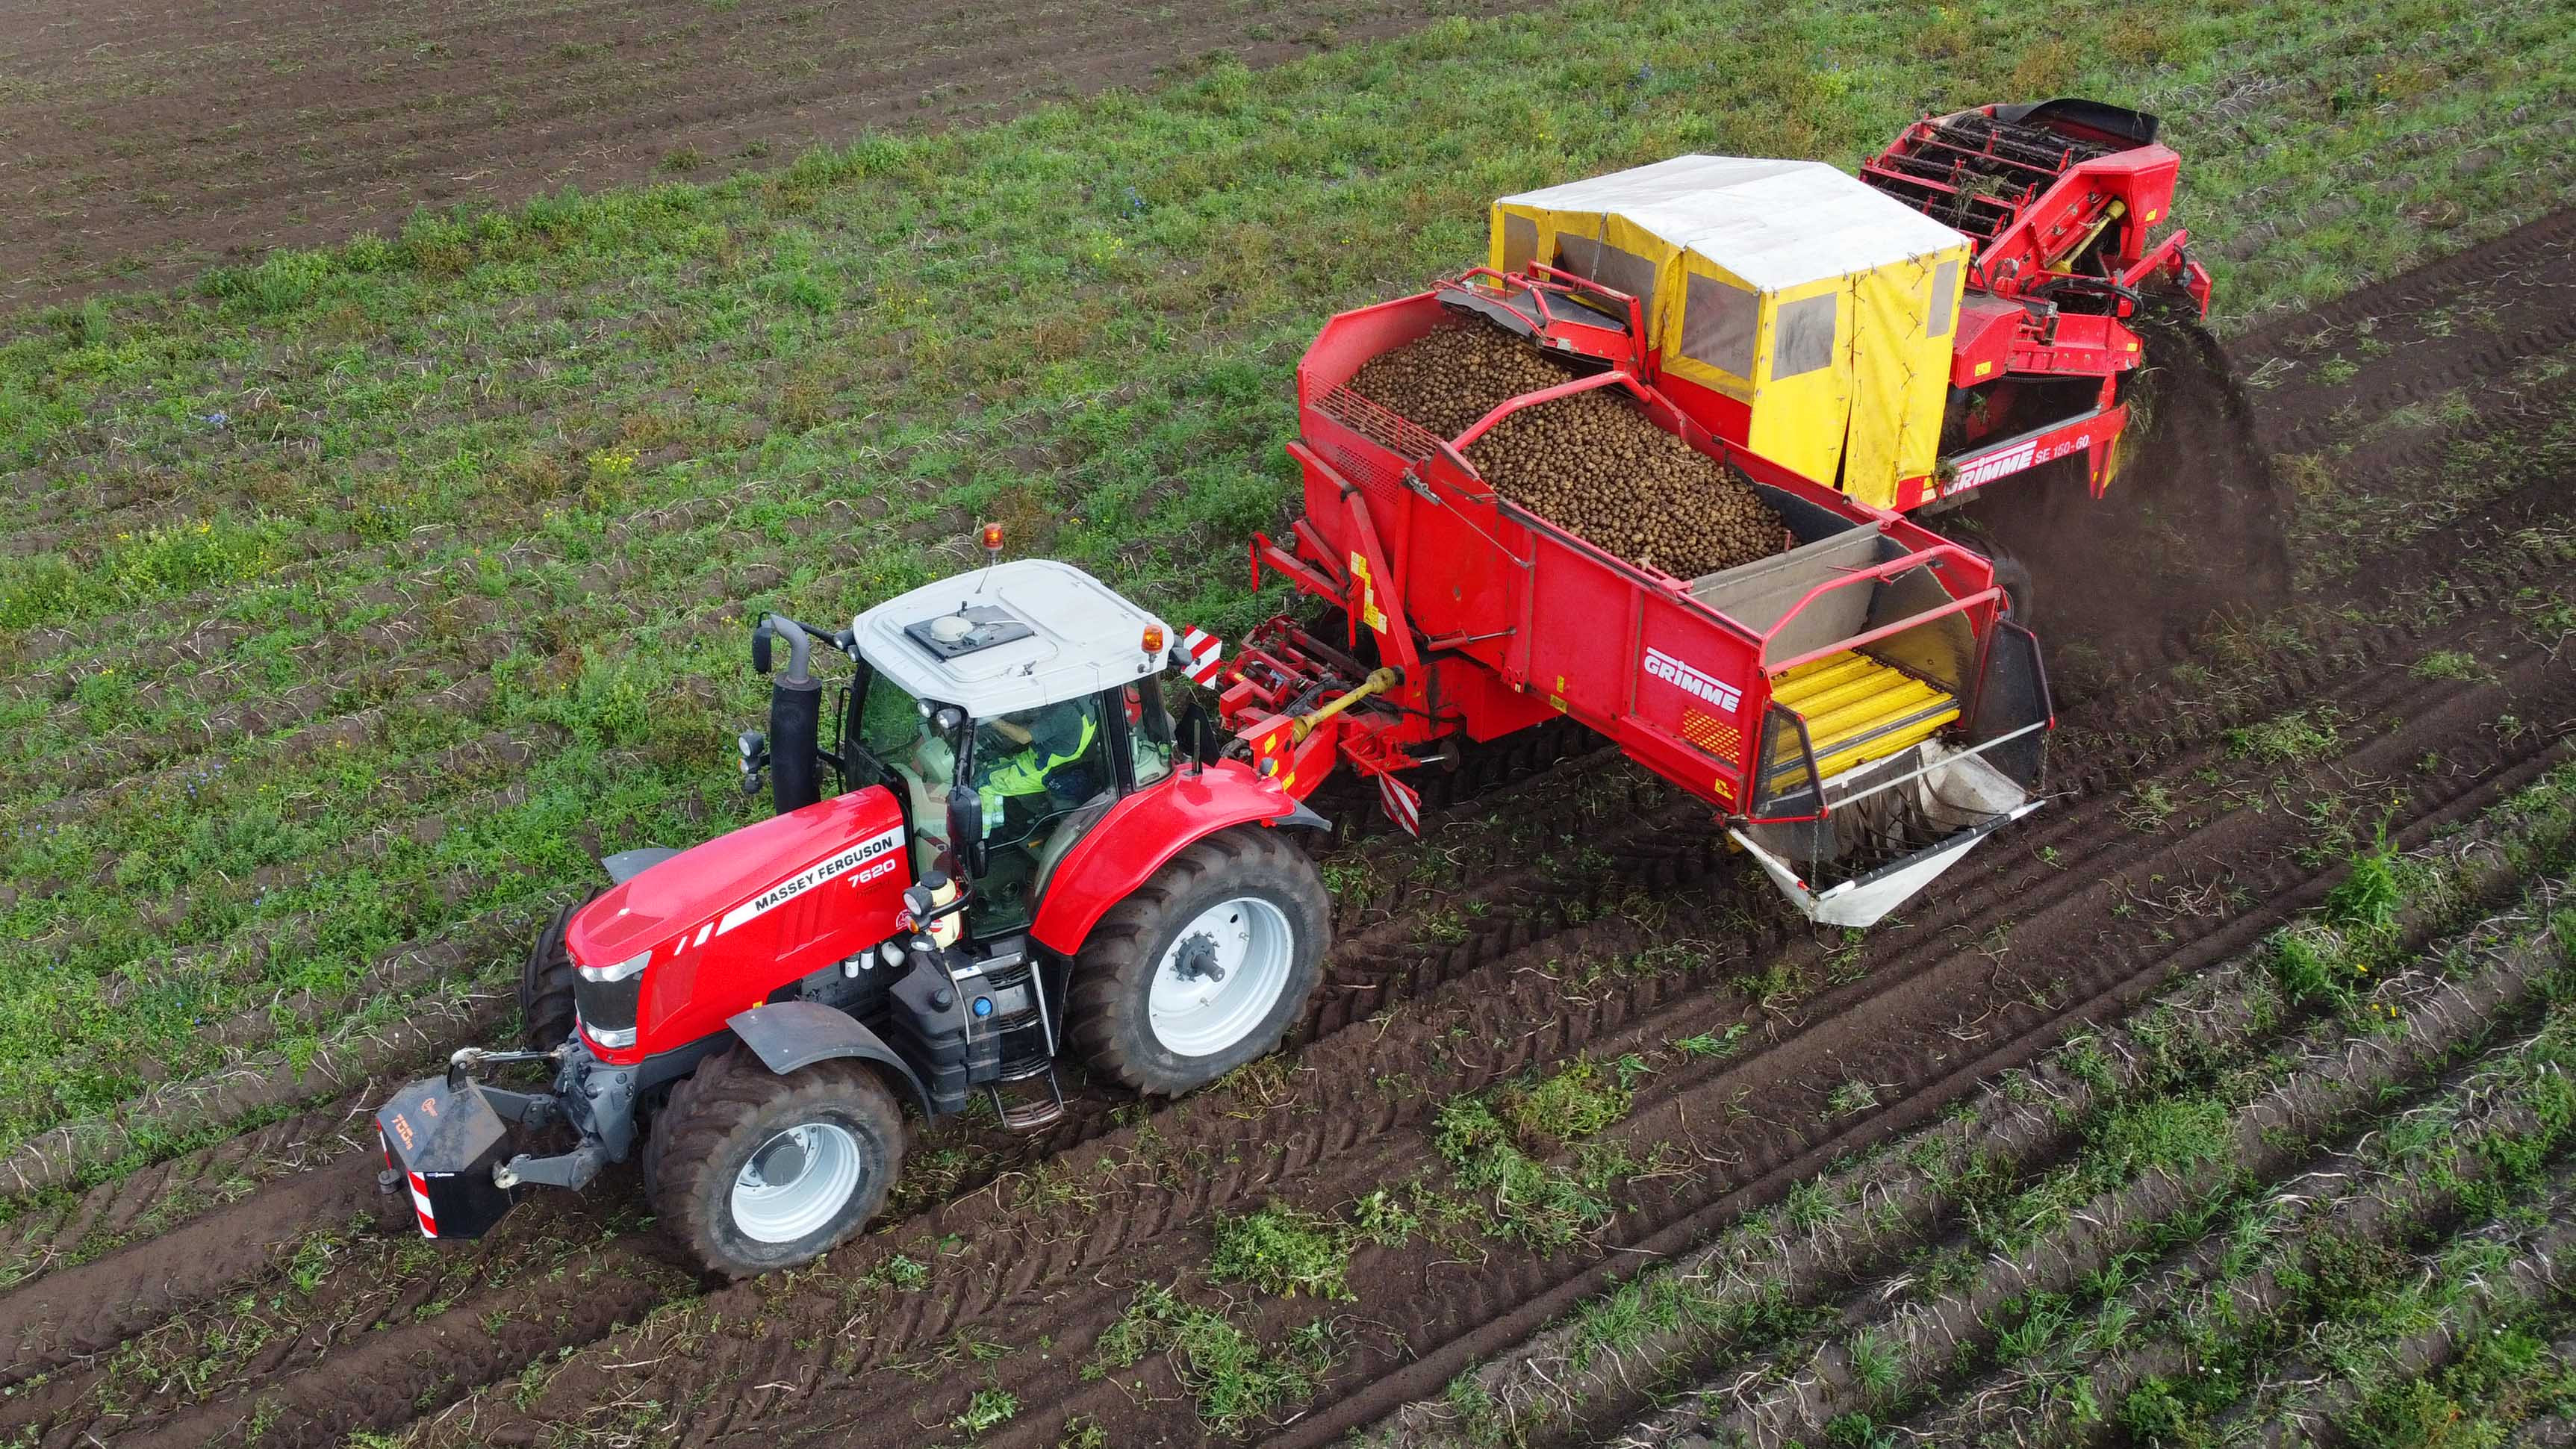 Kartoffeloptageren har i år fået monteret en flowmåler, der kan måle nøjagtigt hvor mange kartofler der bliver høstet, meter for meter